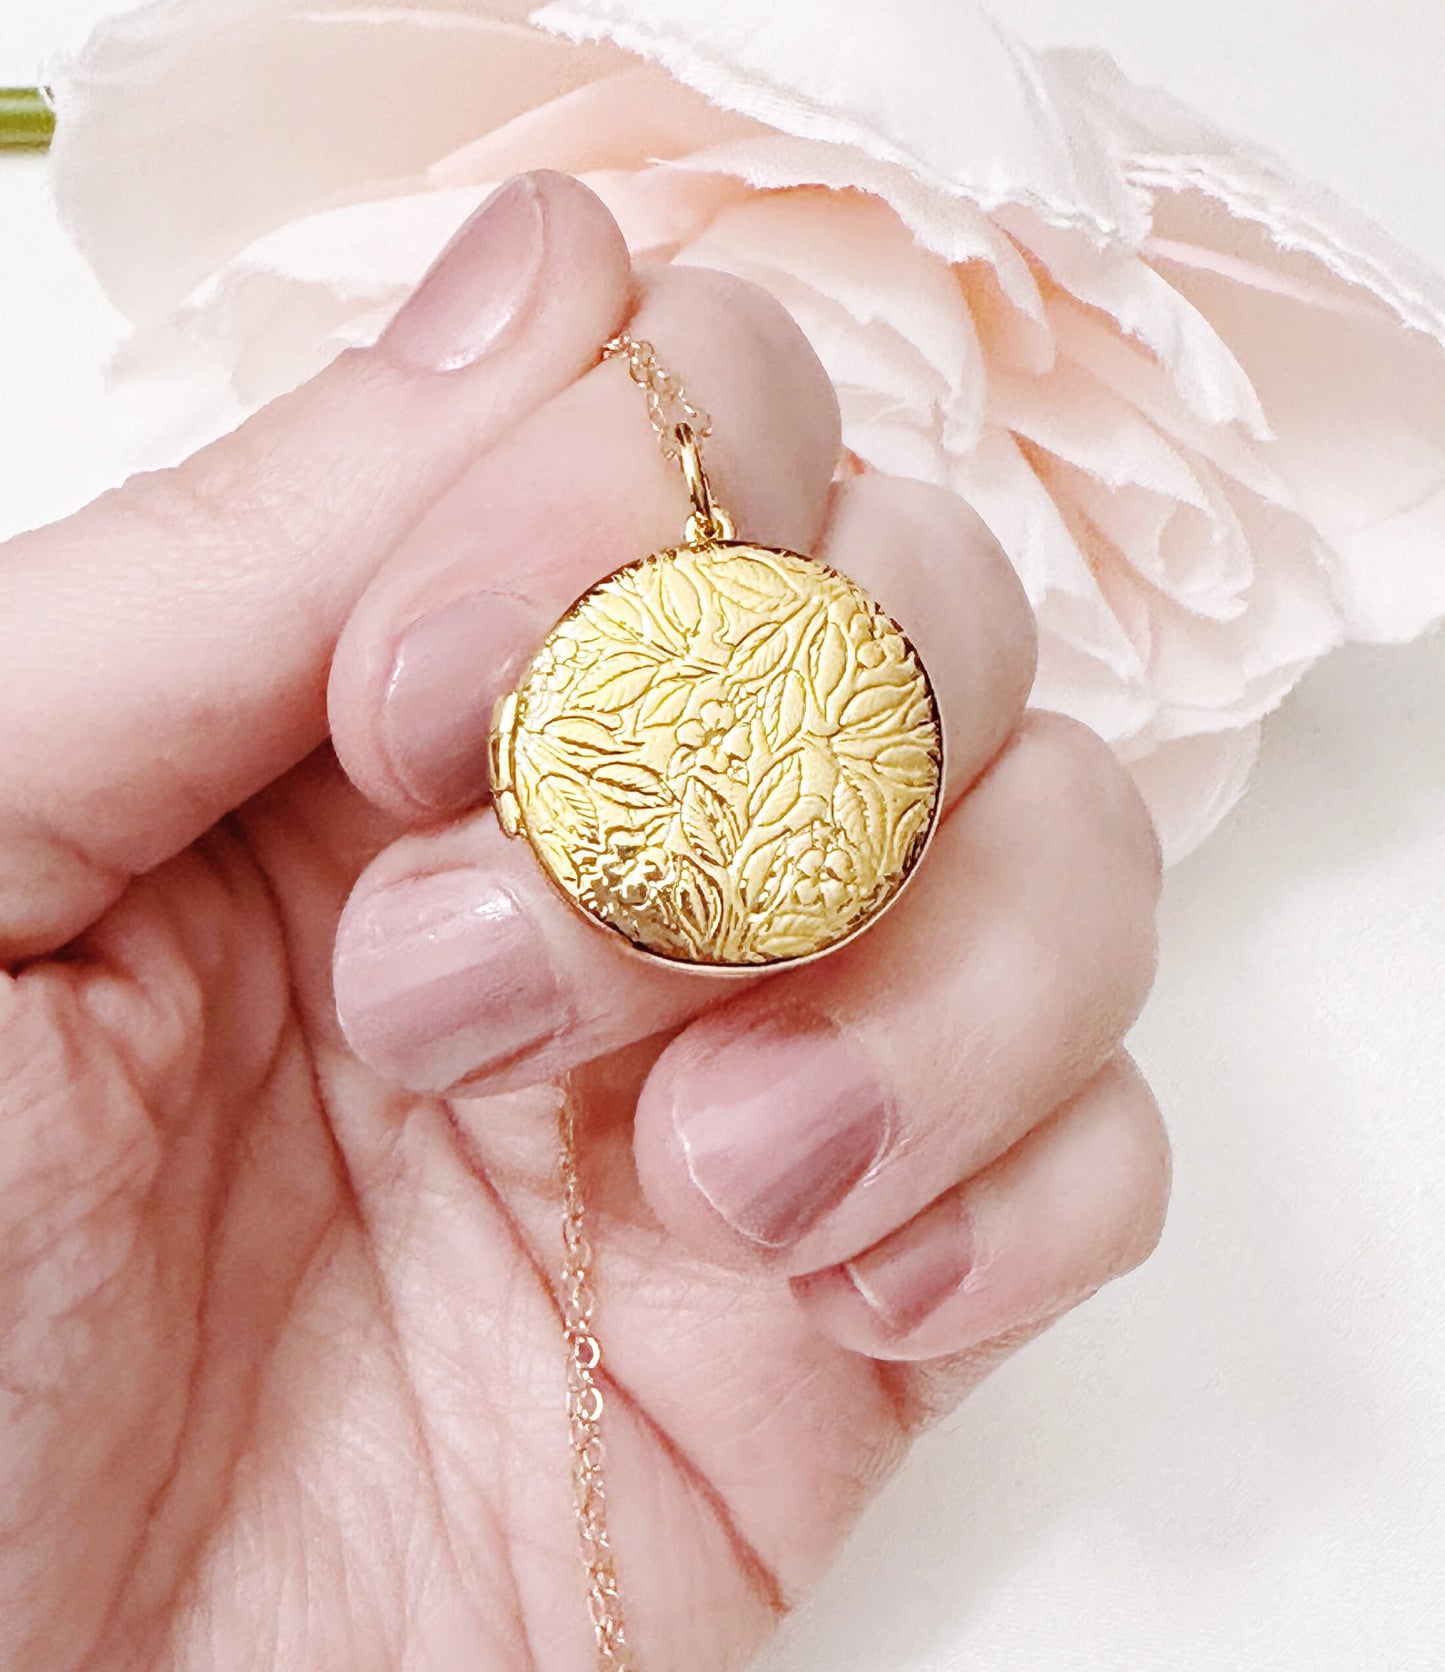 Small Locket / Rose Gold Filled Locket / Flower Locket / Locket Necklace/ Memorial Locket Necklace / Round Locket / Photo Locket / Locket